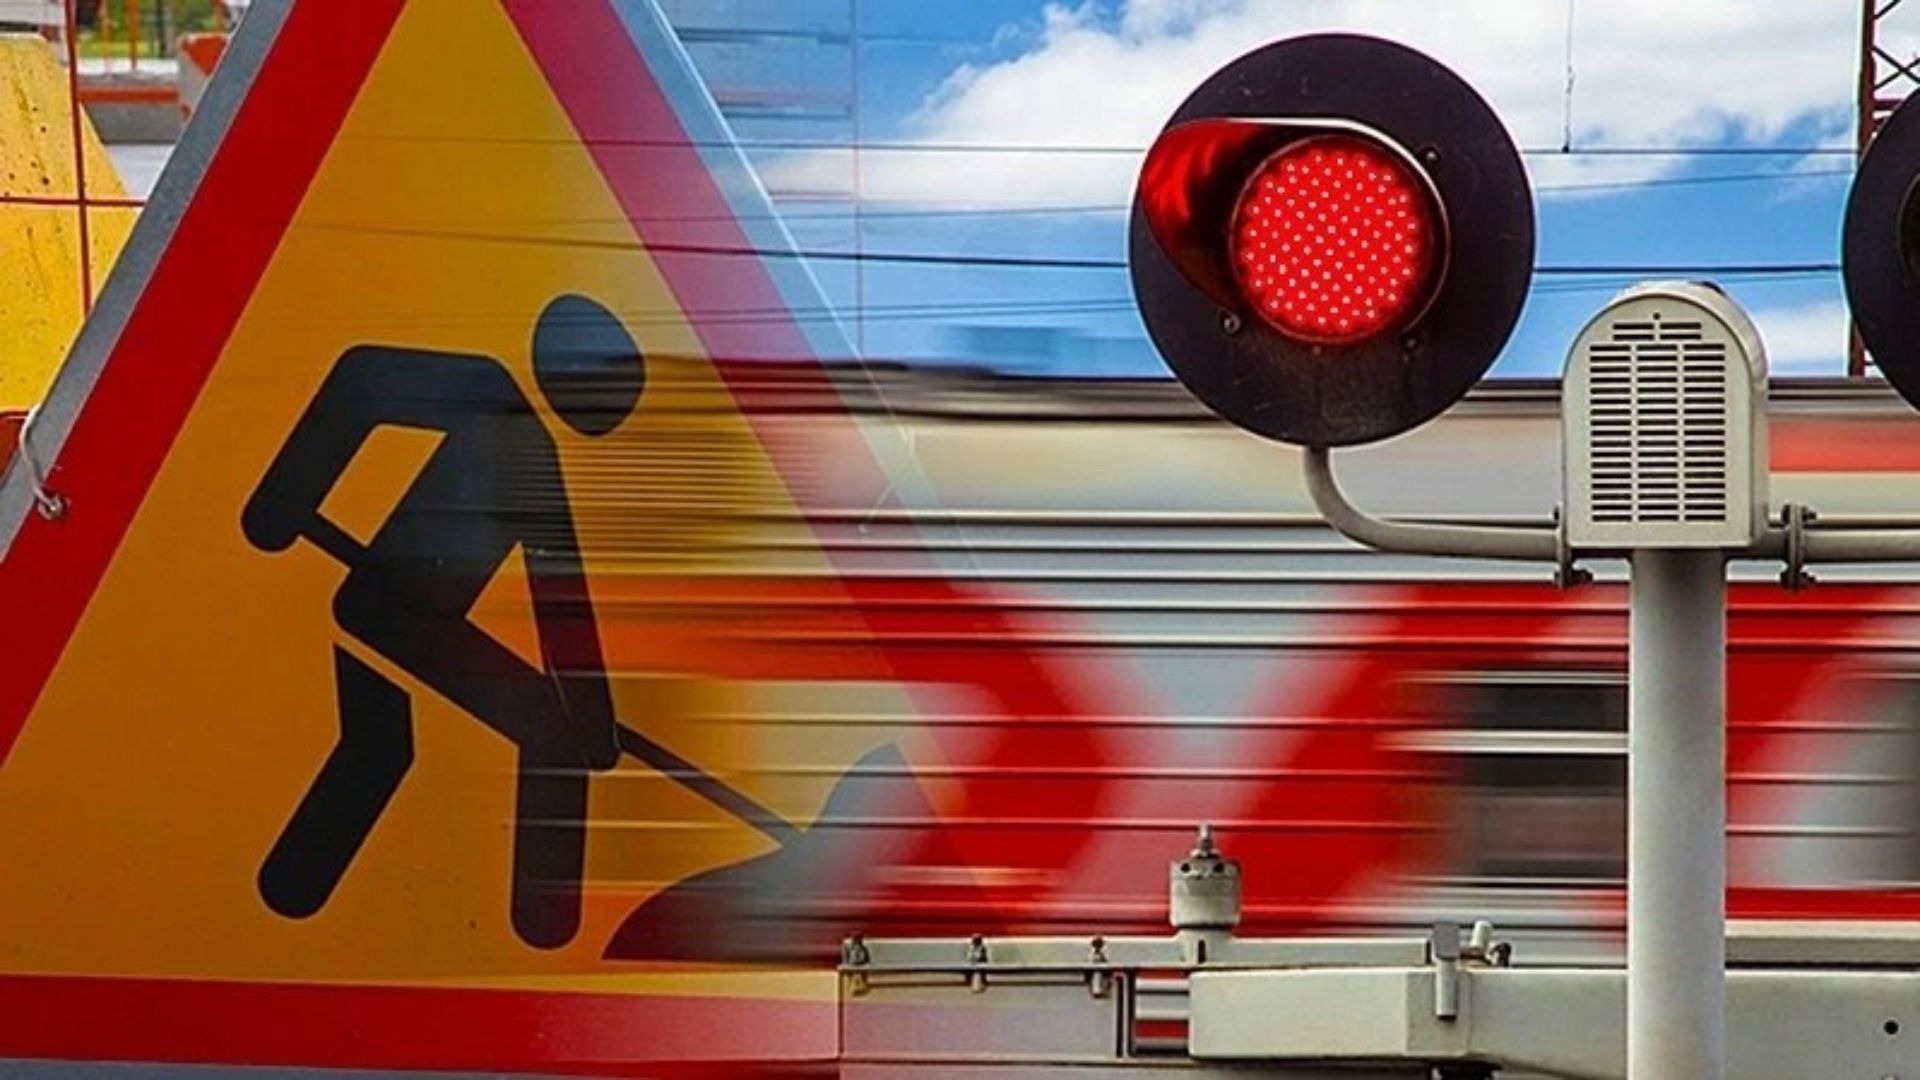 12 апреля на железнодорожном переезде 196 км (ст. Нечаевская) движение для водителей автотранспорта с 09-00 до 17-00 будет закрыто в связи с ремонтом железнодорожных путей на переезде.